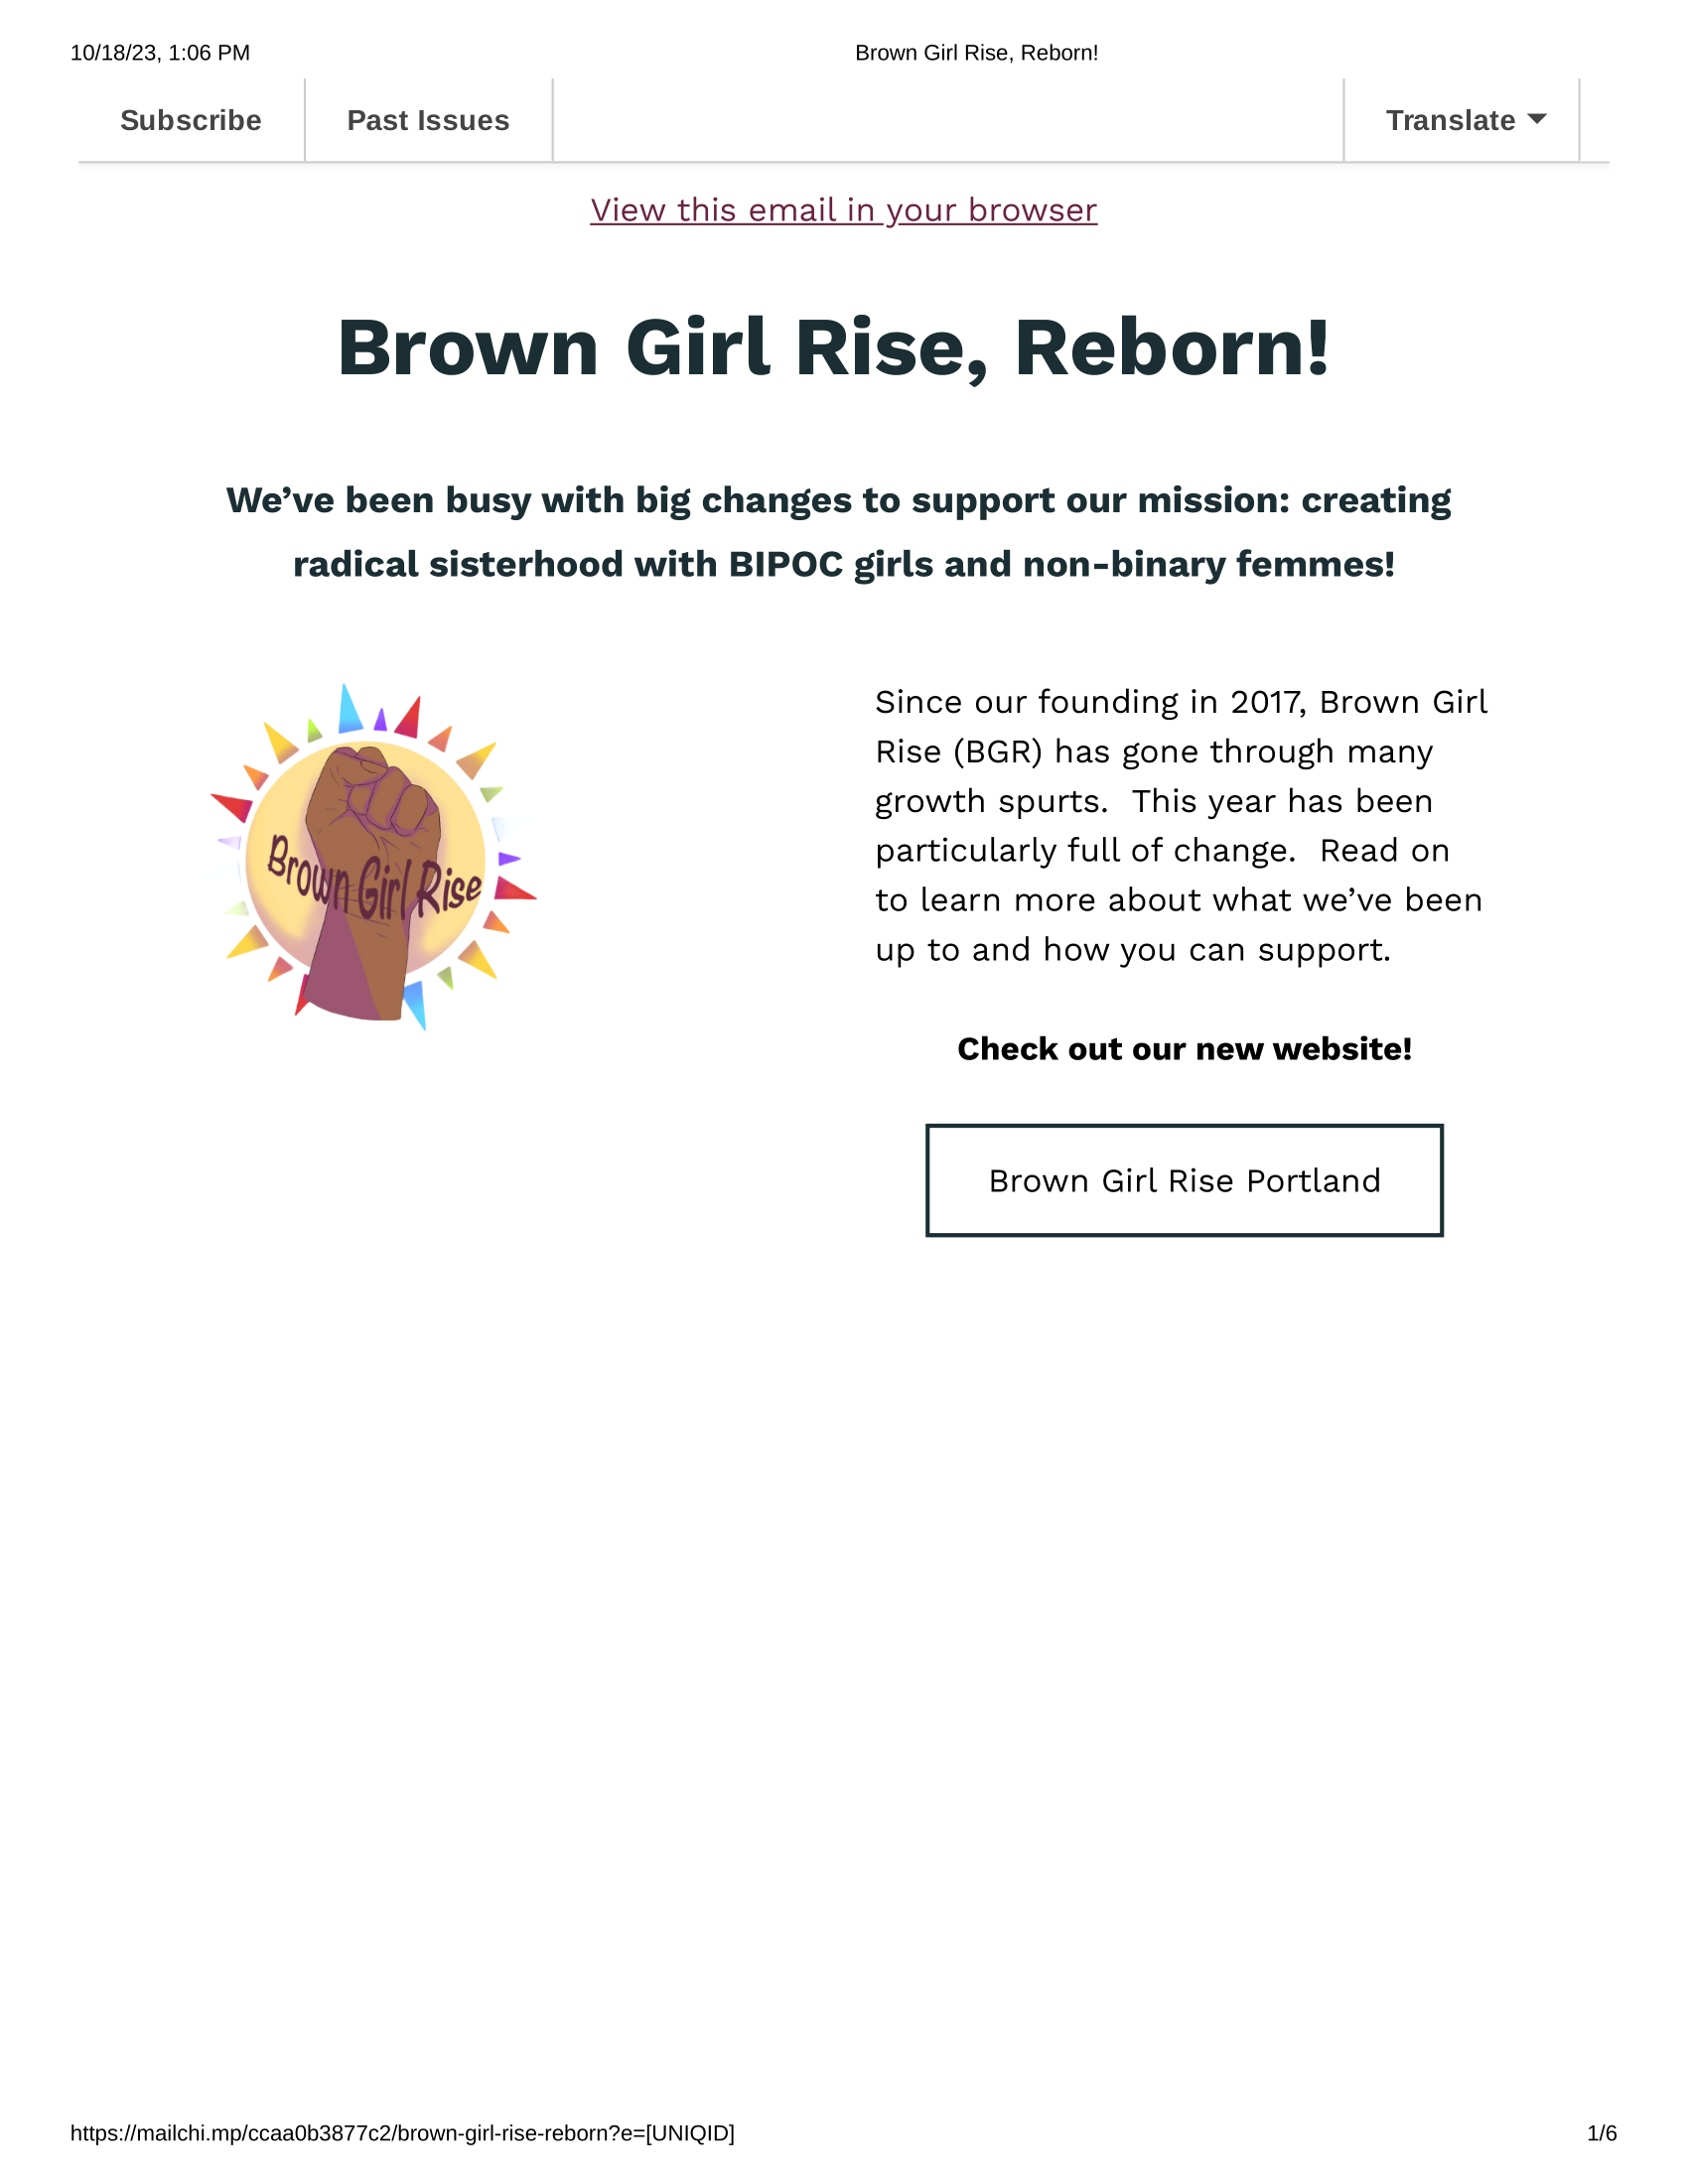 Brown Girl Rise, Reborn1!.png